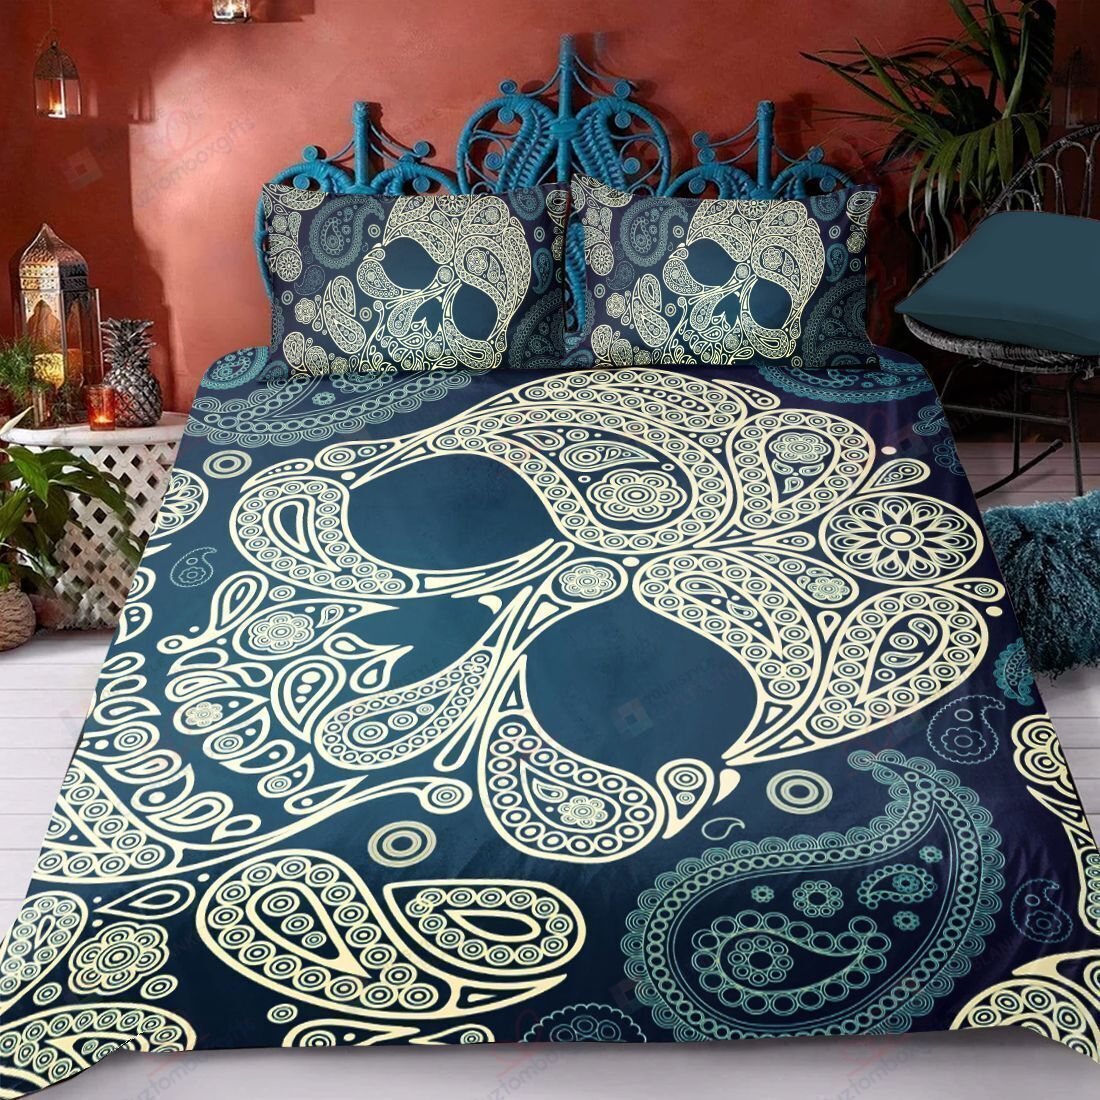 Skull Art Pattern Bedding Set Bed Sheets Spread Comforter Duvet Cover Bedding Sets